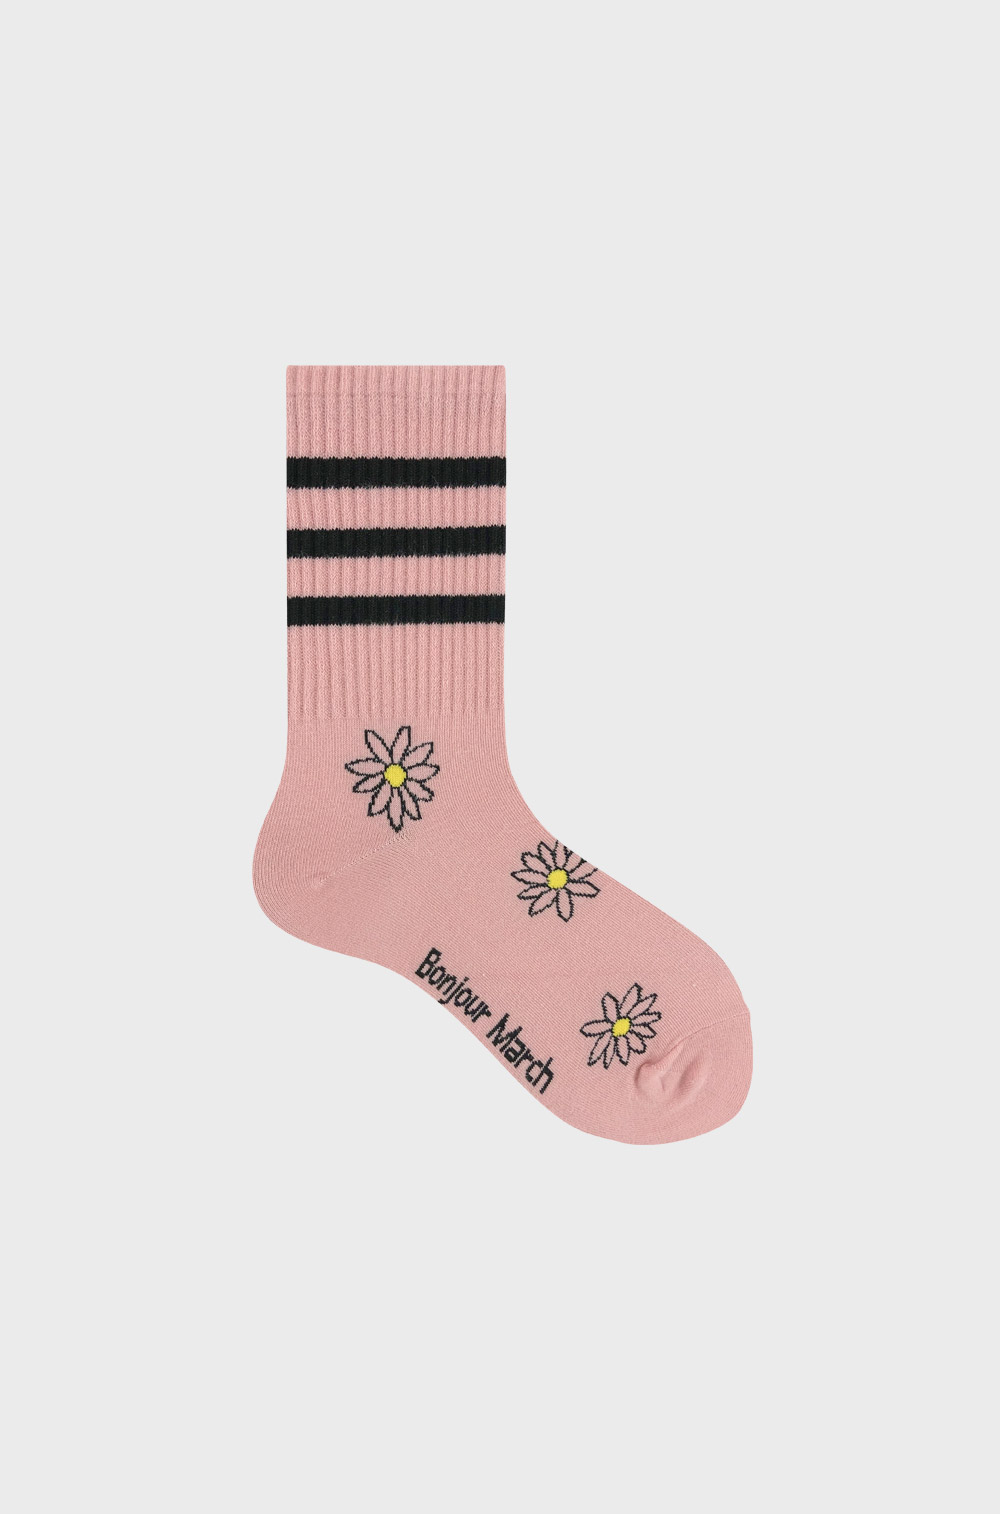 Daisy sporty socks